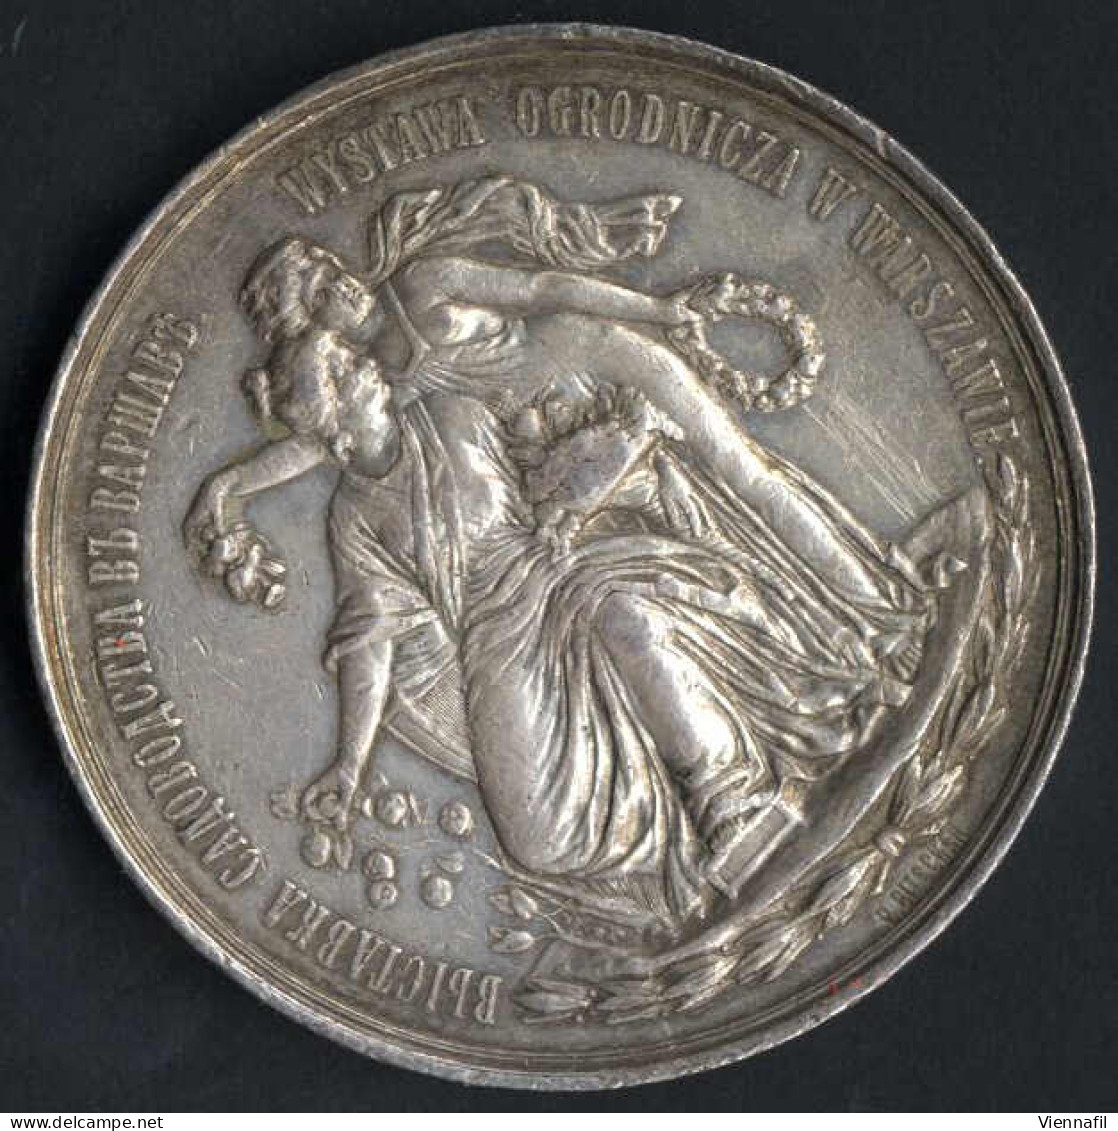 Medaille Der Warschauer Gartenbaugenossenschaft, Gartenbauausstellung Warschau 1895, Silbermedaille Von L. Steinman, Gep - Pologne